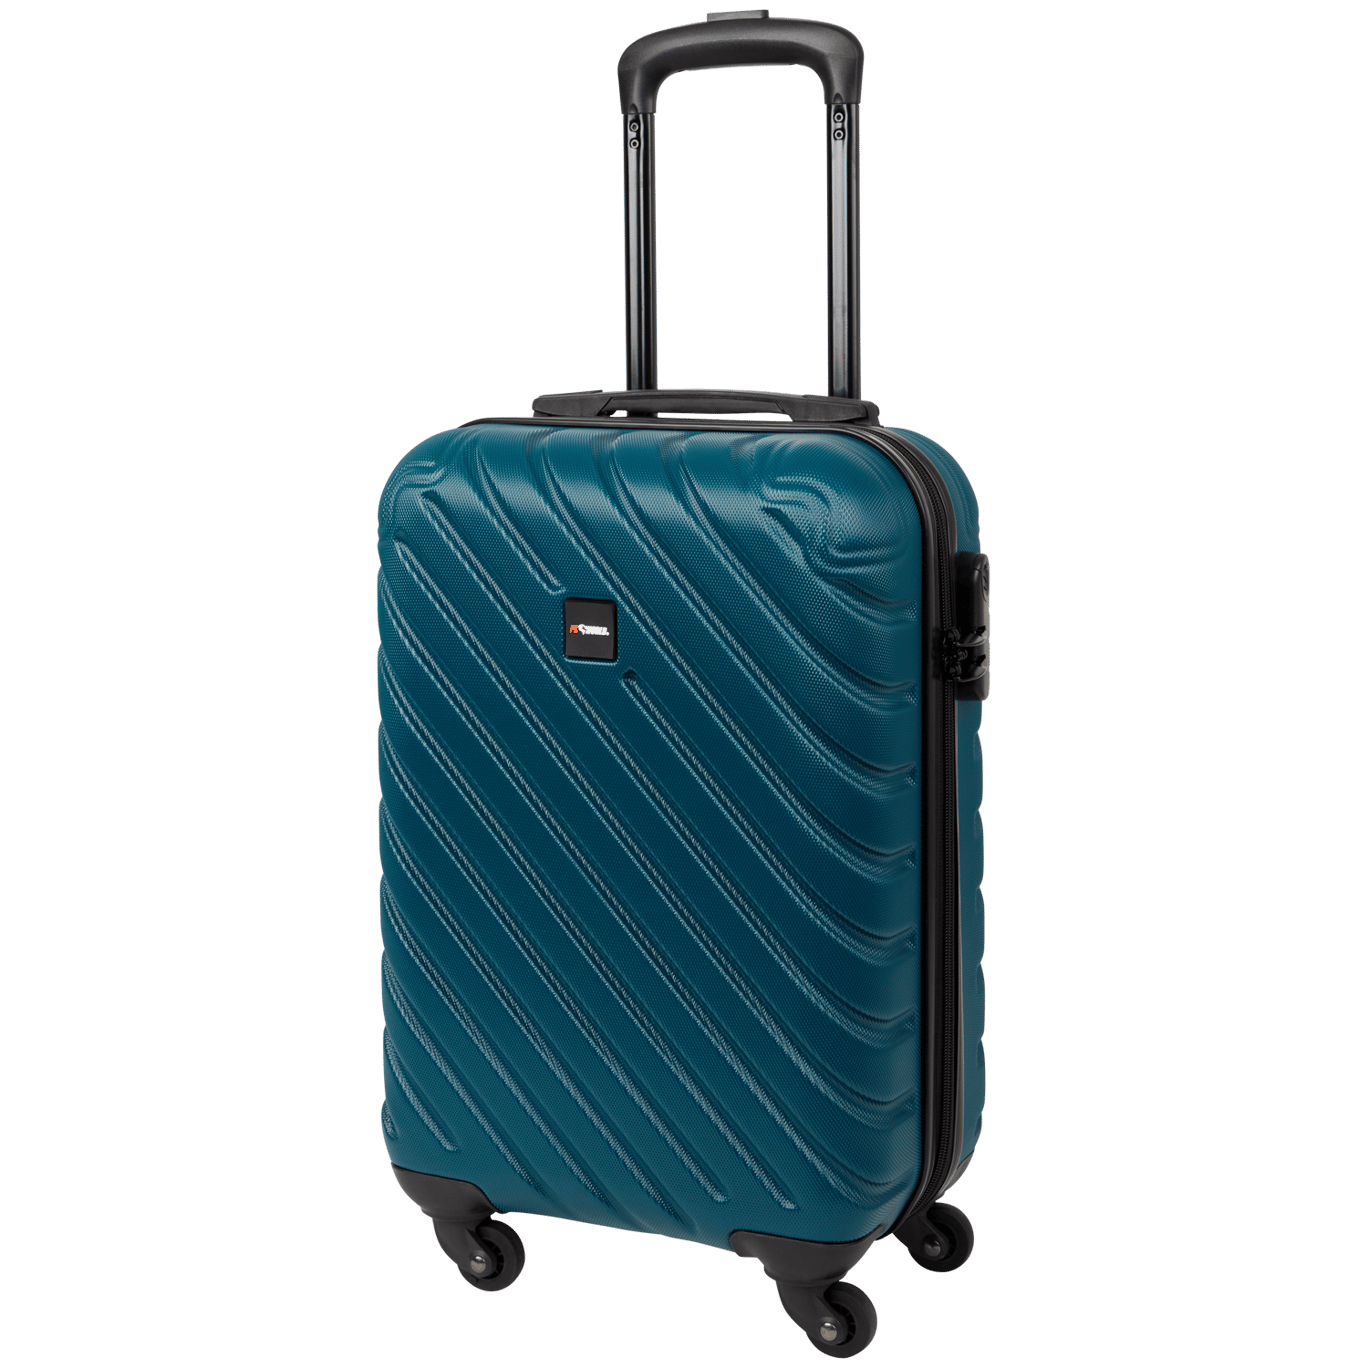 Pakistan meloen Oprecht Koffer und Reisetaschen zum günstigen Preis | Action.com